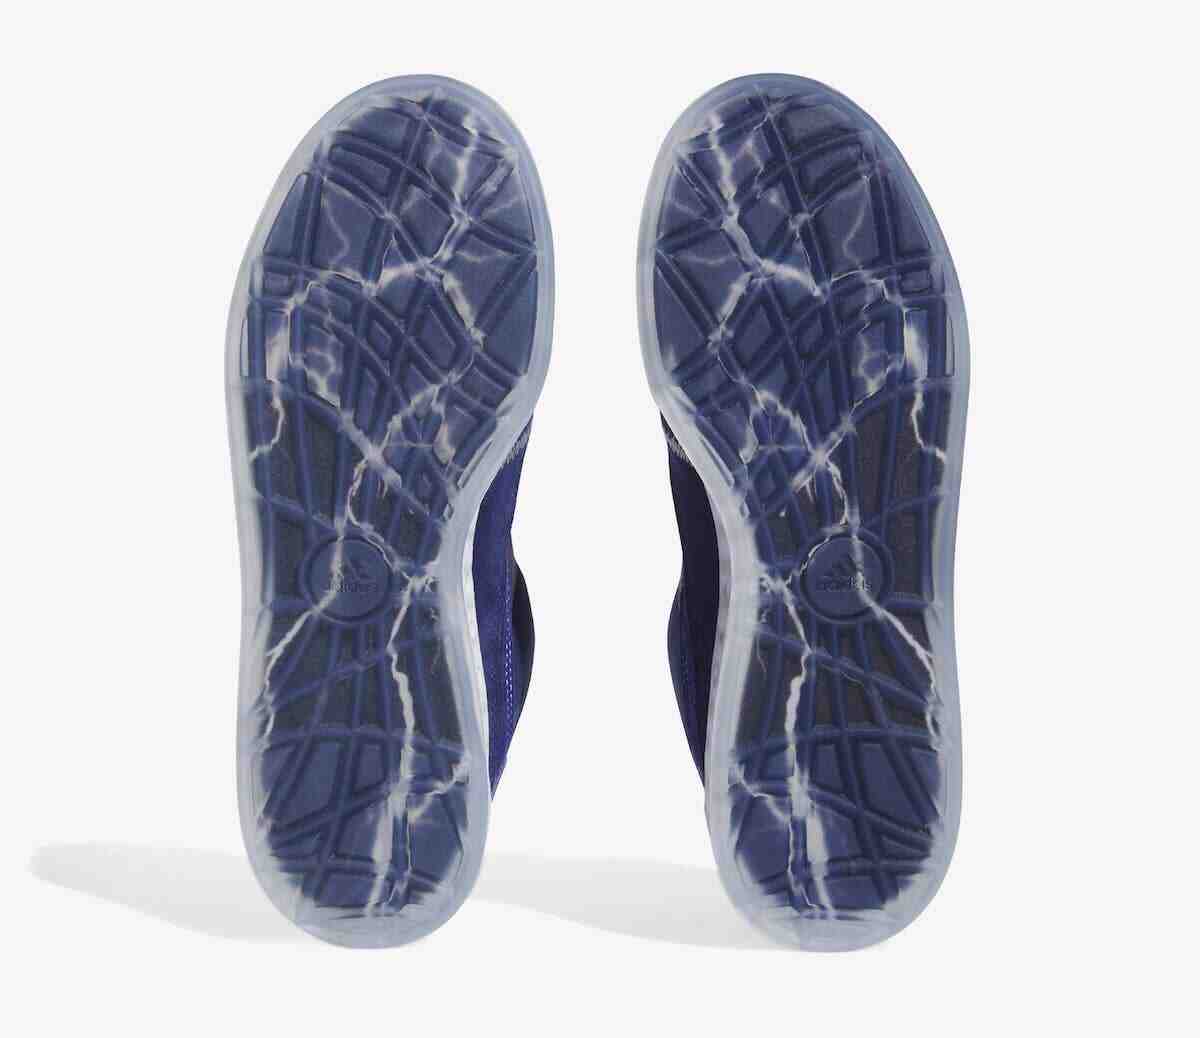 阿迪达斯, 运动鞋, SAMBA, adidas Adimatic, Adidas - 迈特-斯滕豪特 x 阿迪达斯 Adimatic Mid "胜利蓝 "9 月 23 日发布